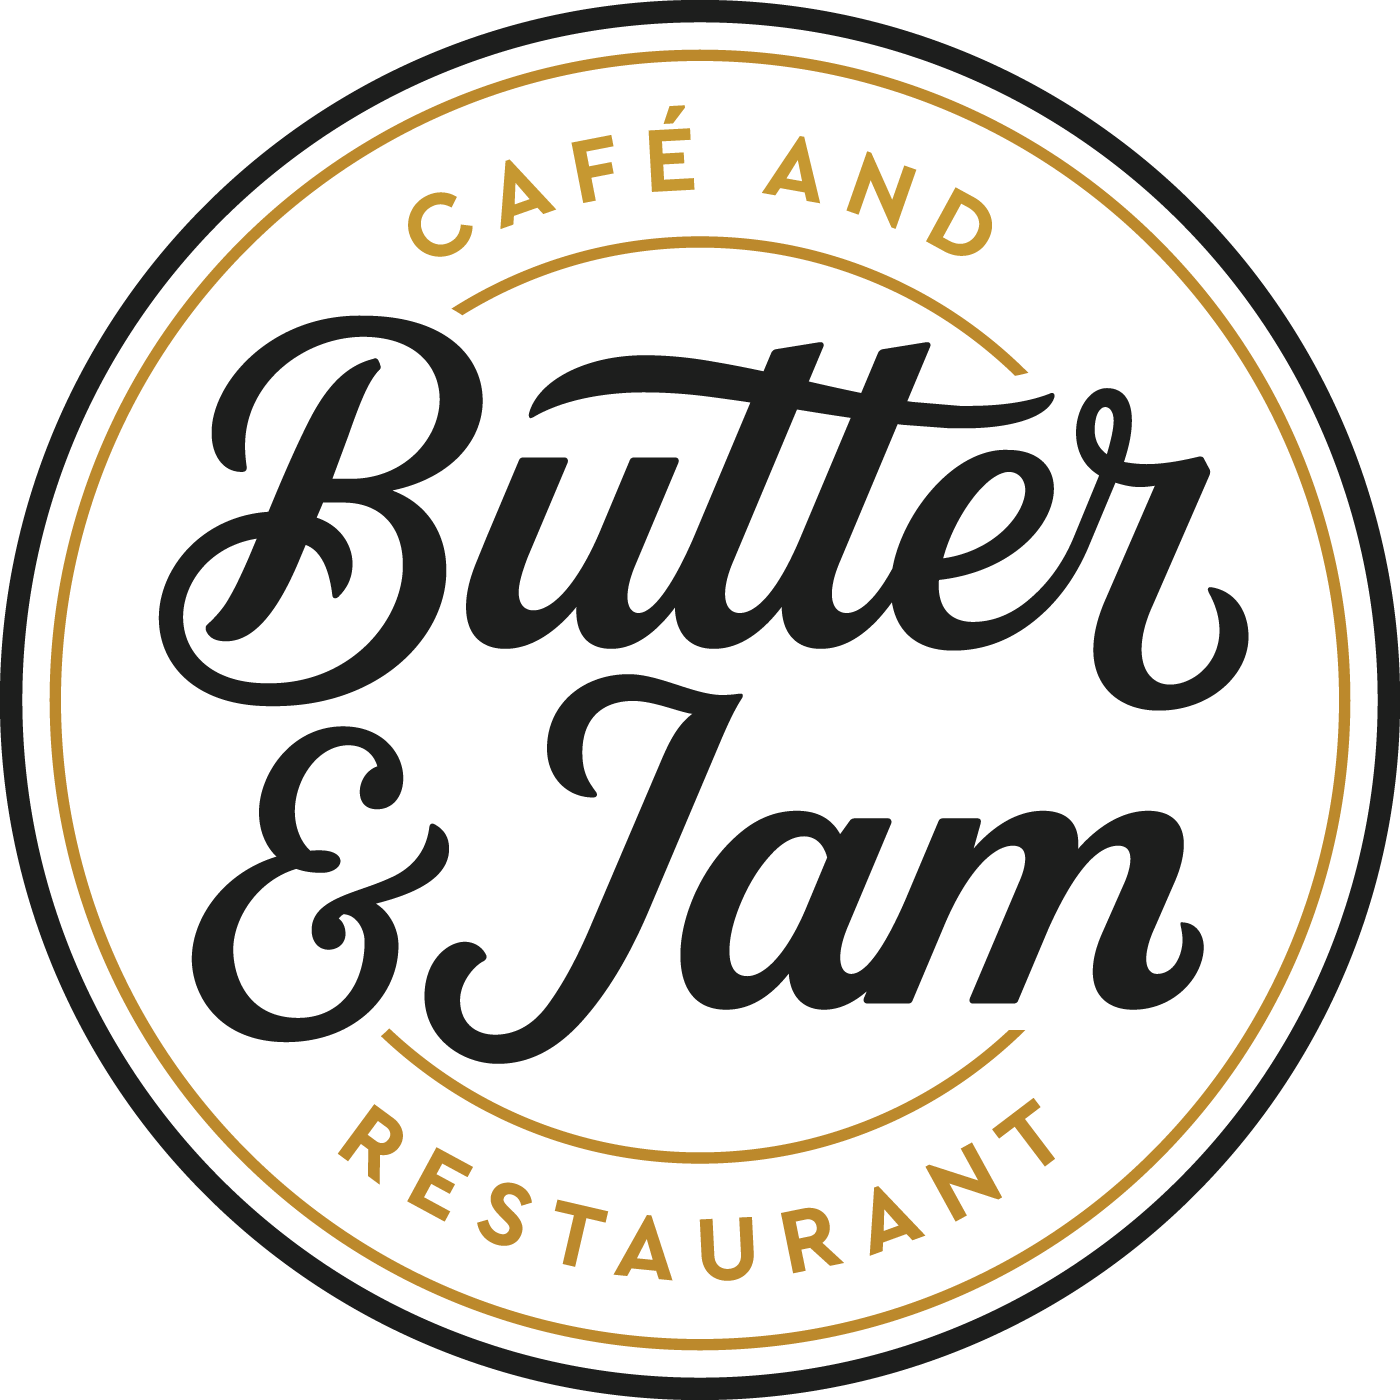 Butter &amp; Jam Café